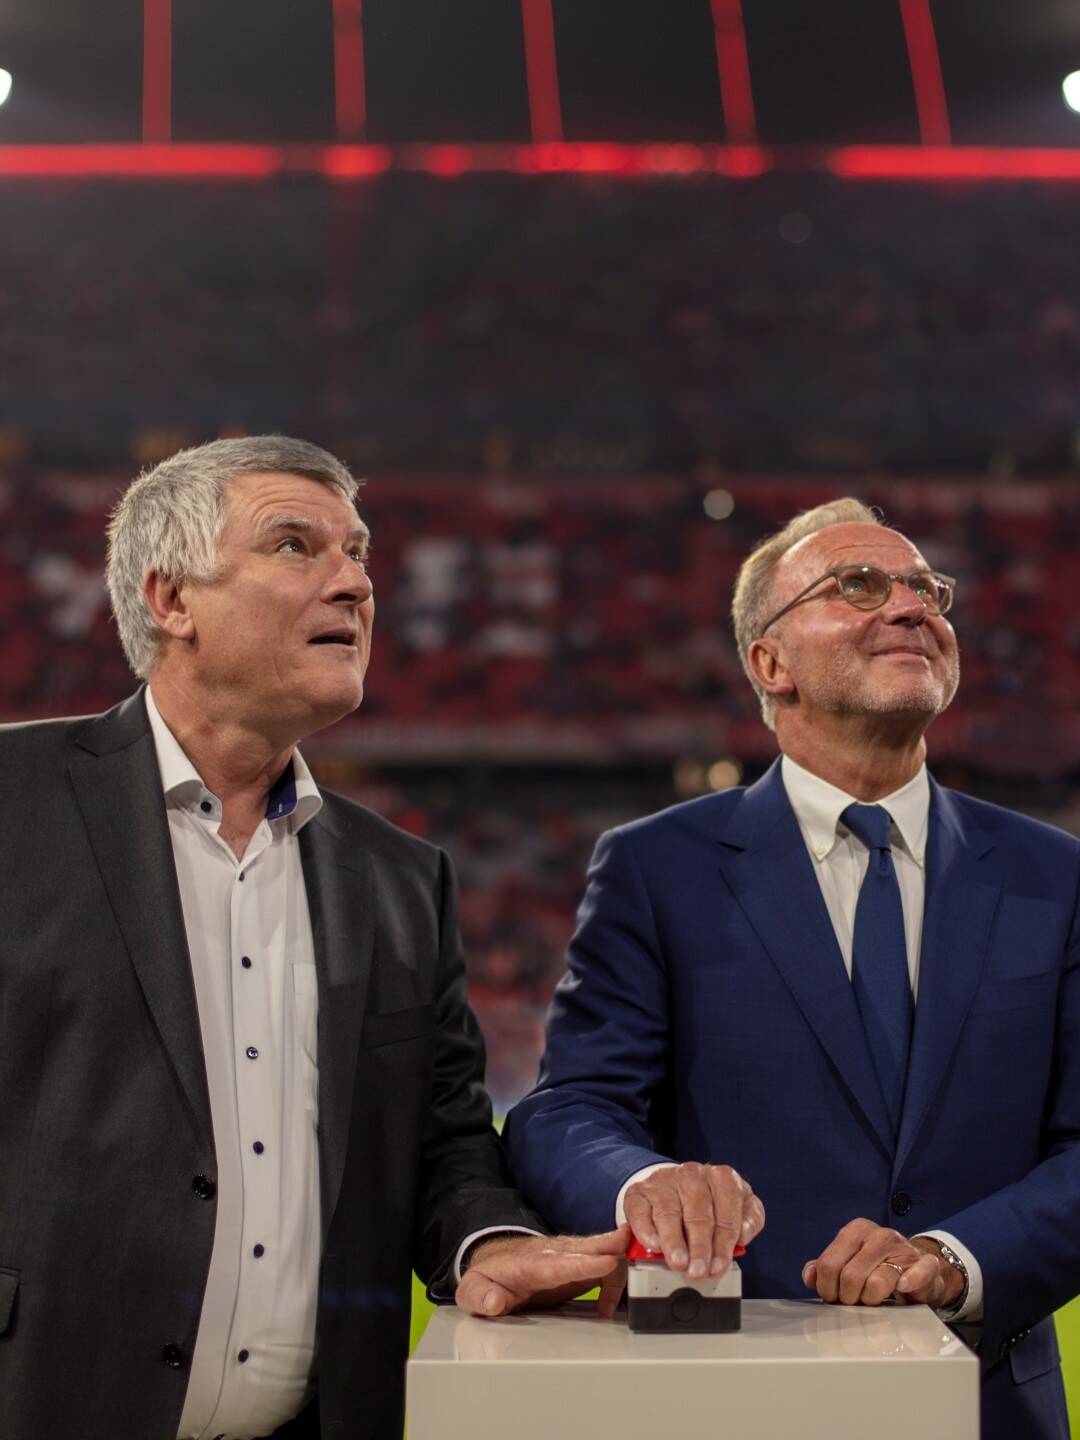 Zumtobel Group beleuchtet Allianz Arena in kräftigem FC Bayern-Rot. Feierlich in Betrieb genommen wurde die neue Effektbeleuchtung an diesem Spielabend von Karl-Heinz Rummenigge, Vorstandsvorsitzender der FC Bayern München AG und Alfred Felder, CEO der Zumtobel Group. Photography by Faruk Pinjo.